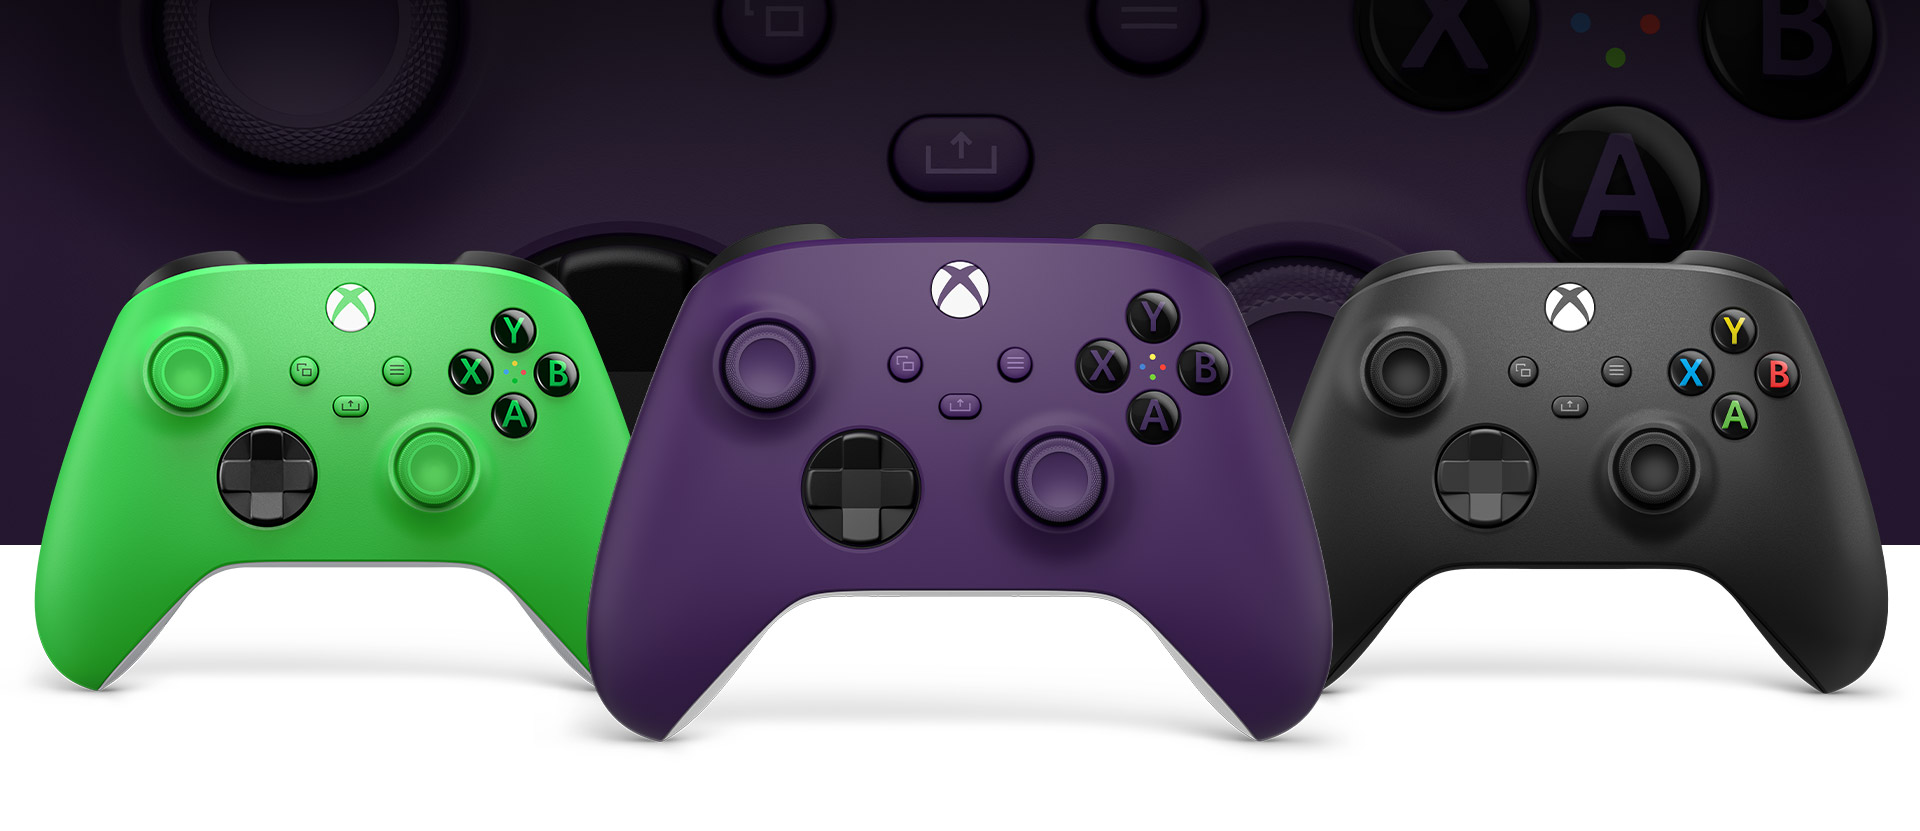 マイクロソフト Microsoft Xbox ワイヤレス コントローラー カーボ